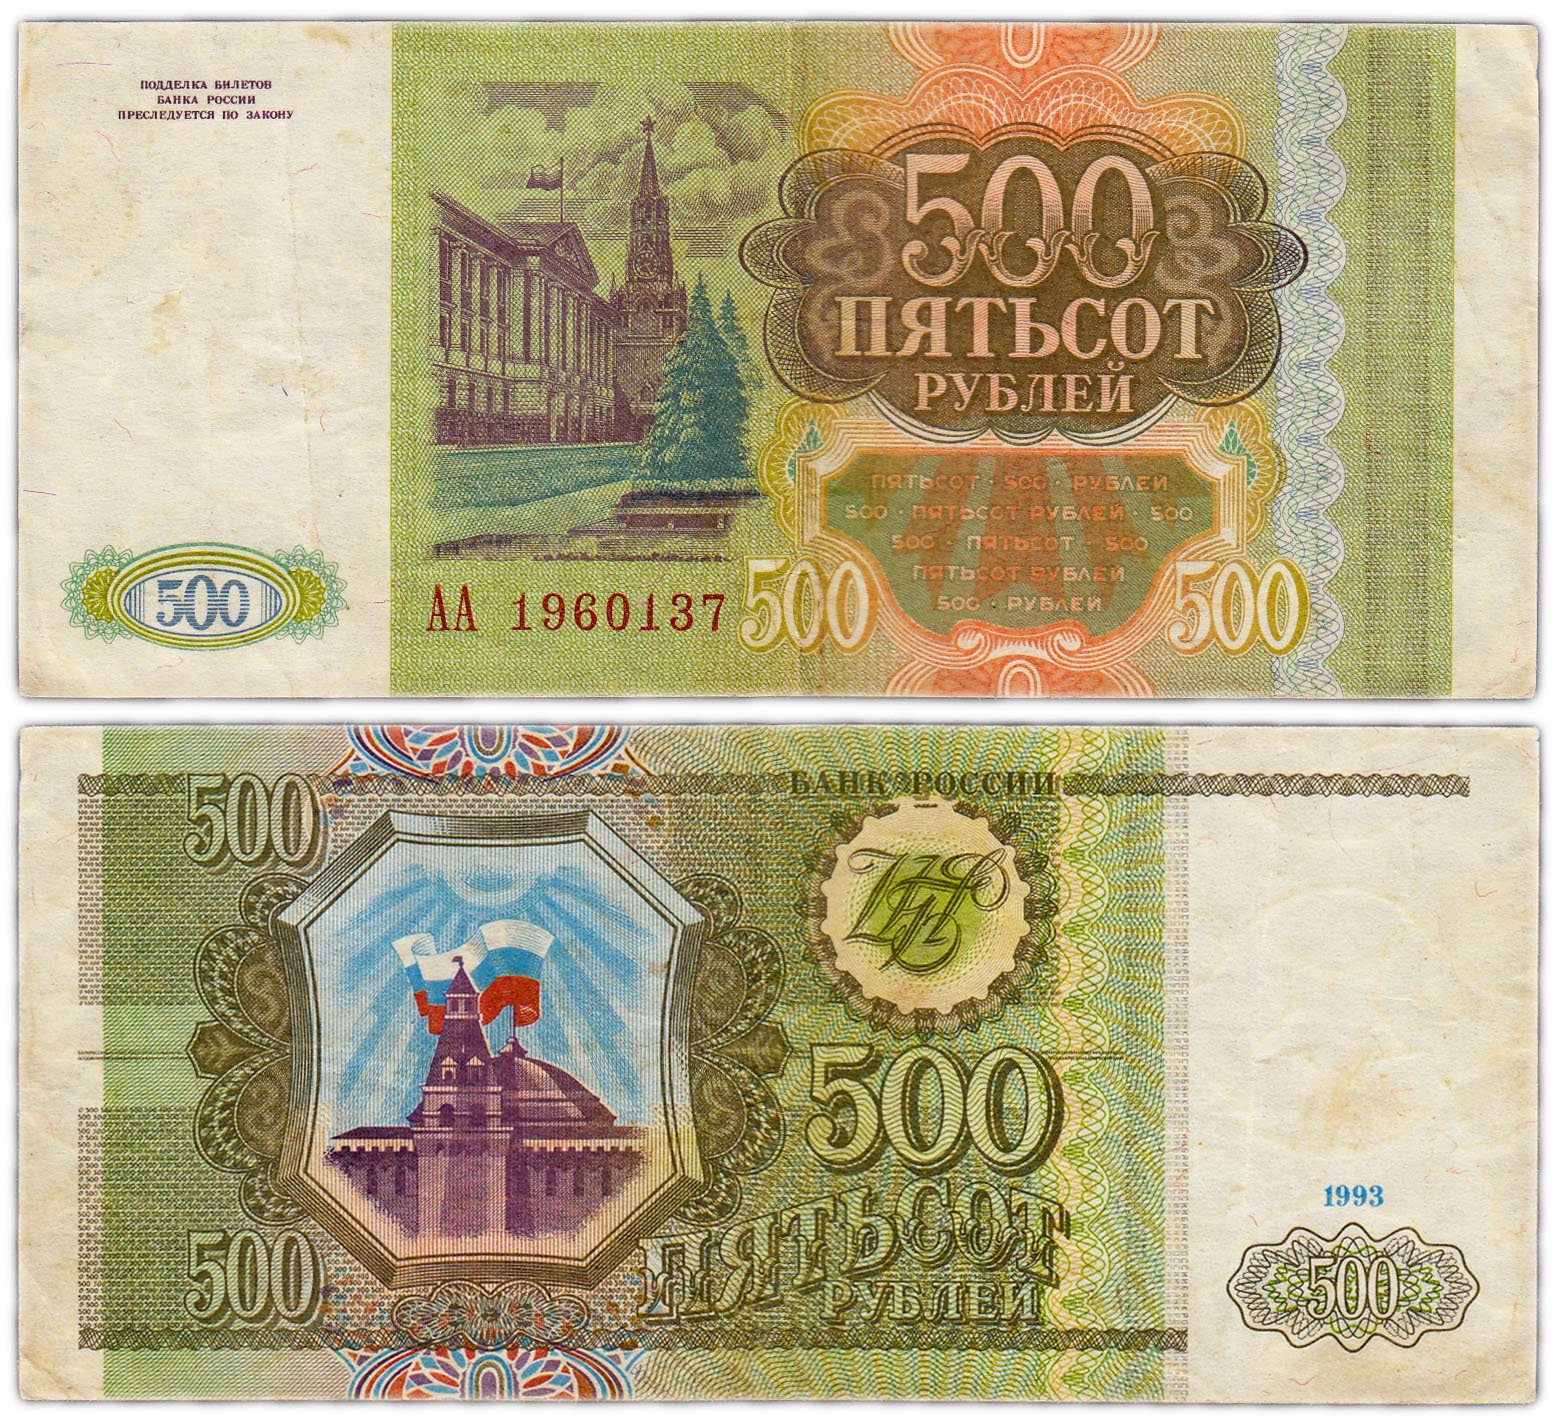 Купюры 90 годов. 500 Рублей 1993. Купюра 500 рублей 1993 года. Банкнота 500 рублей 1993. Купюра 500 рублей 1993.